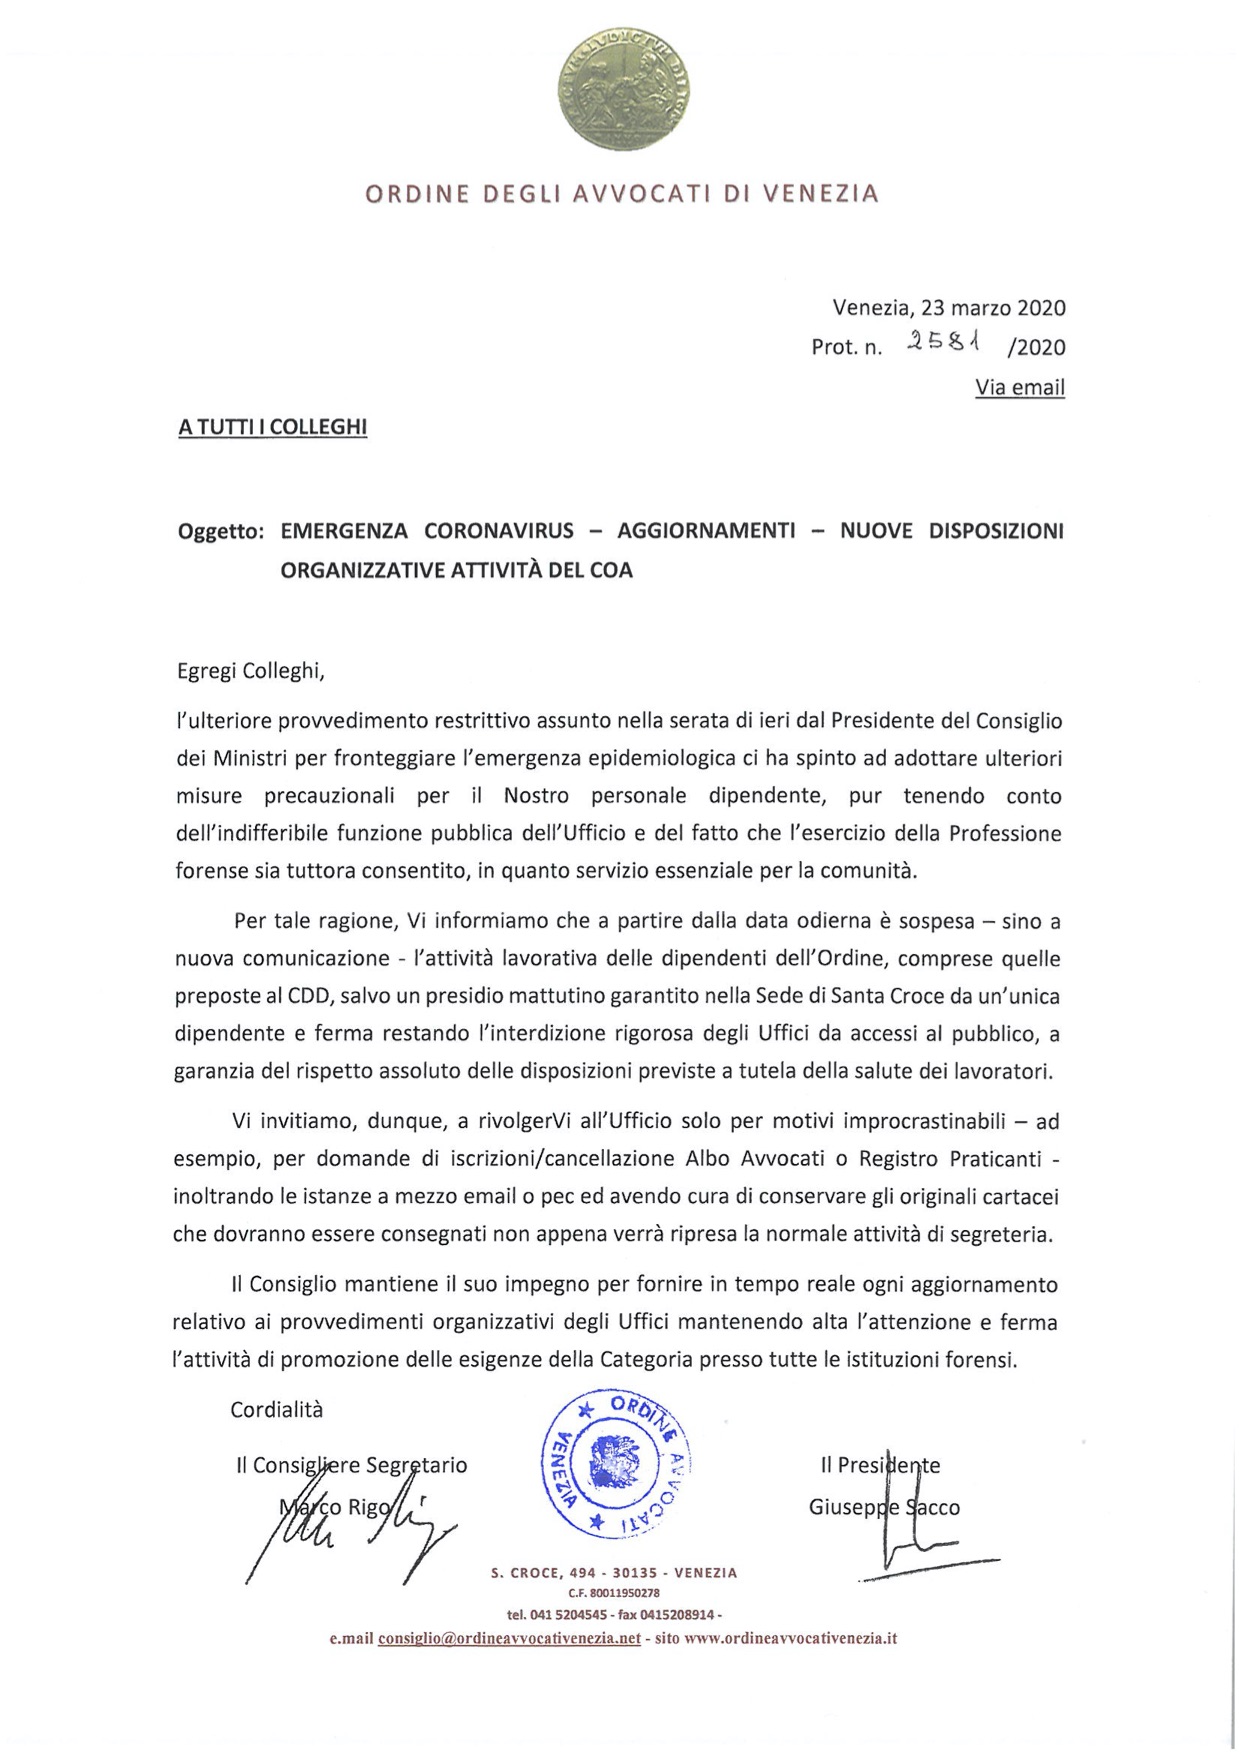 Comunicazione Presidente Consiglio dell'ordine degli Avvocati di Venezia 23.03.2020 - Nuove disposizioni organizzative attività del COA